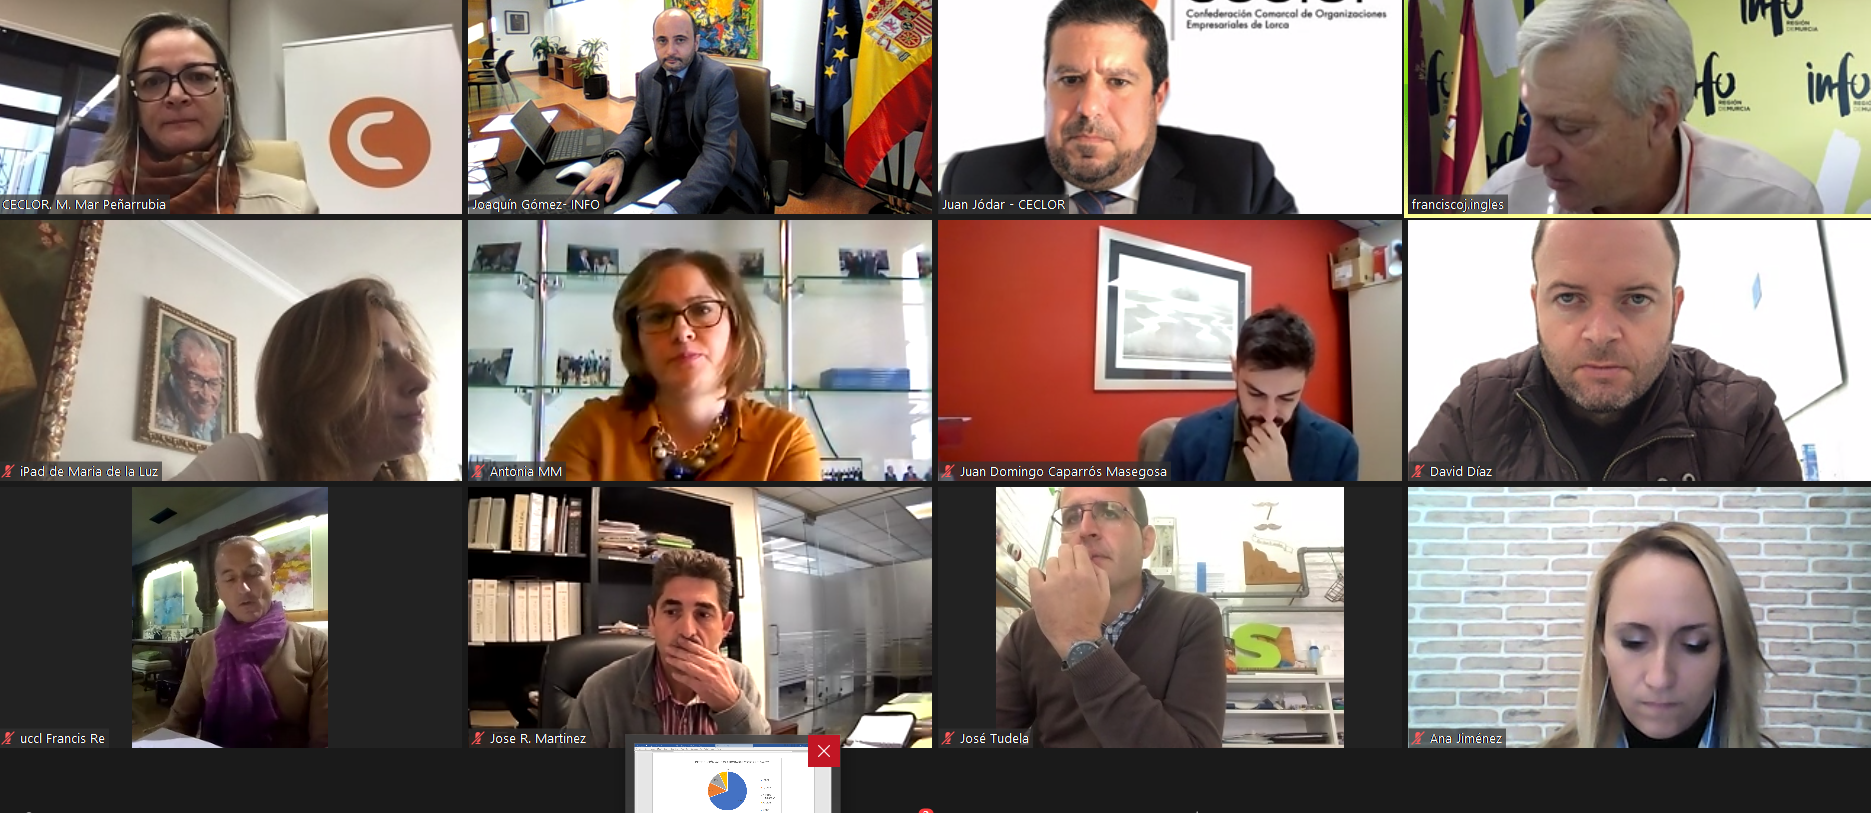 El director del Instituto de Fomento mantuvo una reunión virtual con directivos de la Confederación Comarcal de Organizaciones Empresariales de Lorca (Ceclor)